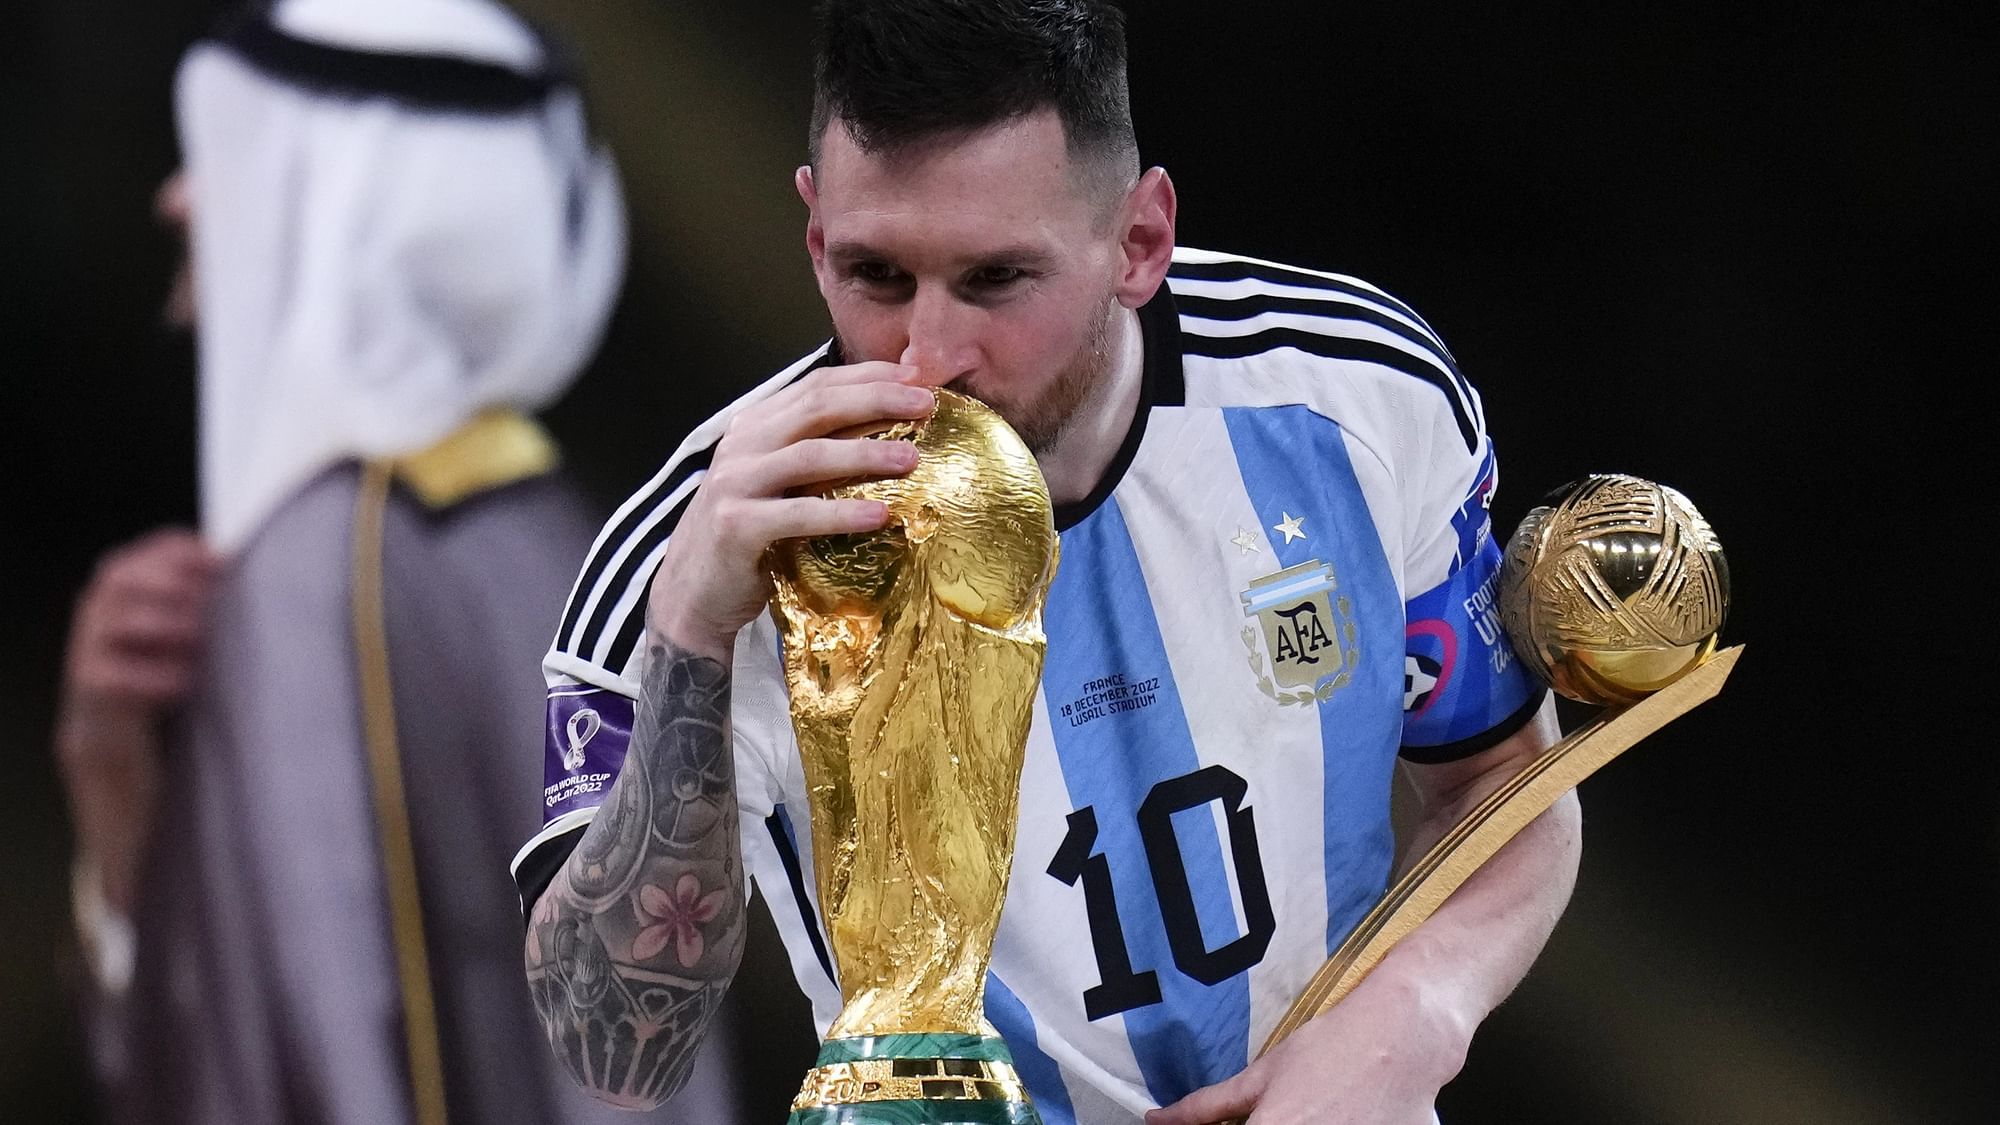 <div class="paragraphs"><p>फीफा विश्व कप जीतने के बाद अर्जेंटीना के लियोनेल मेसी  टूर्नामेंट के सर्वश्रेष्ठ खिलाड़ी </p></div>